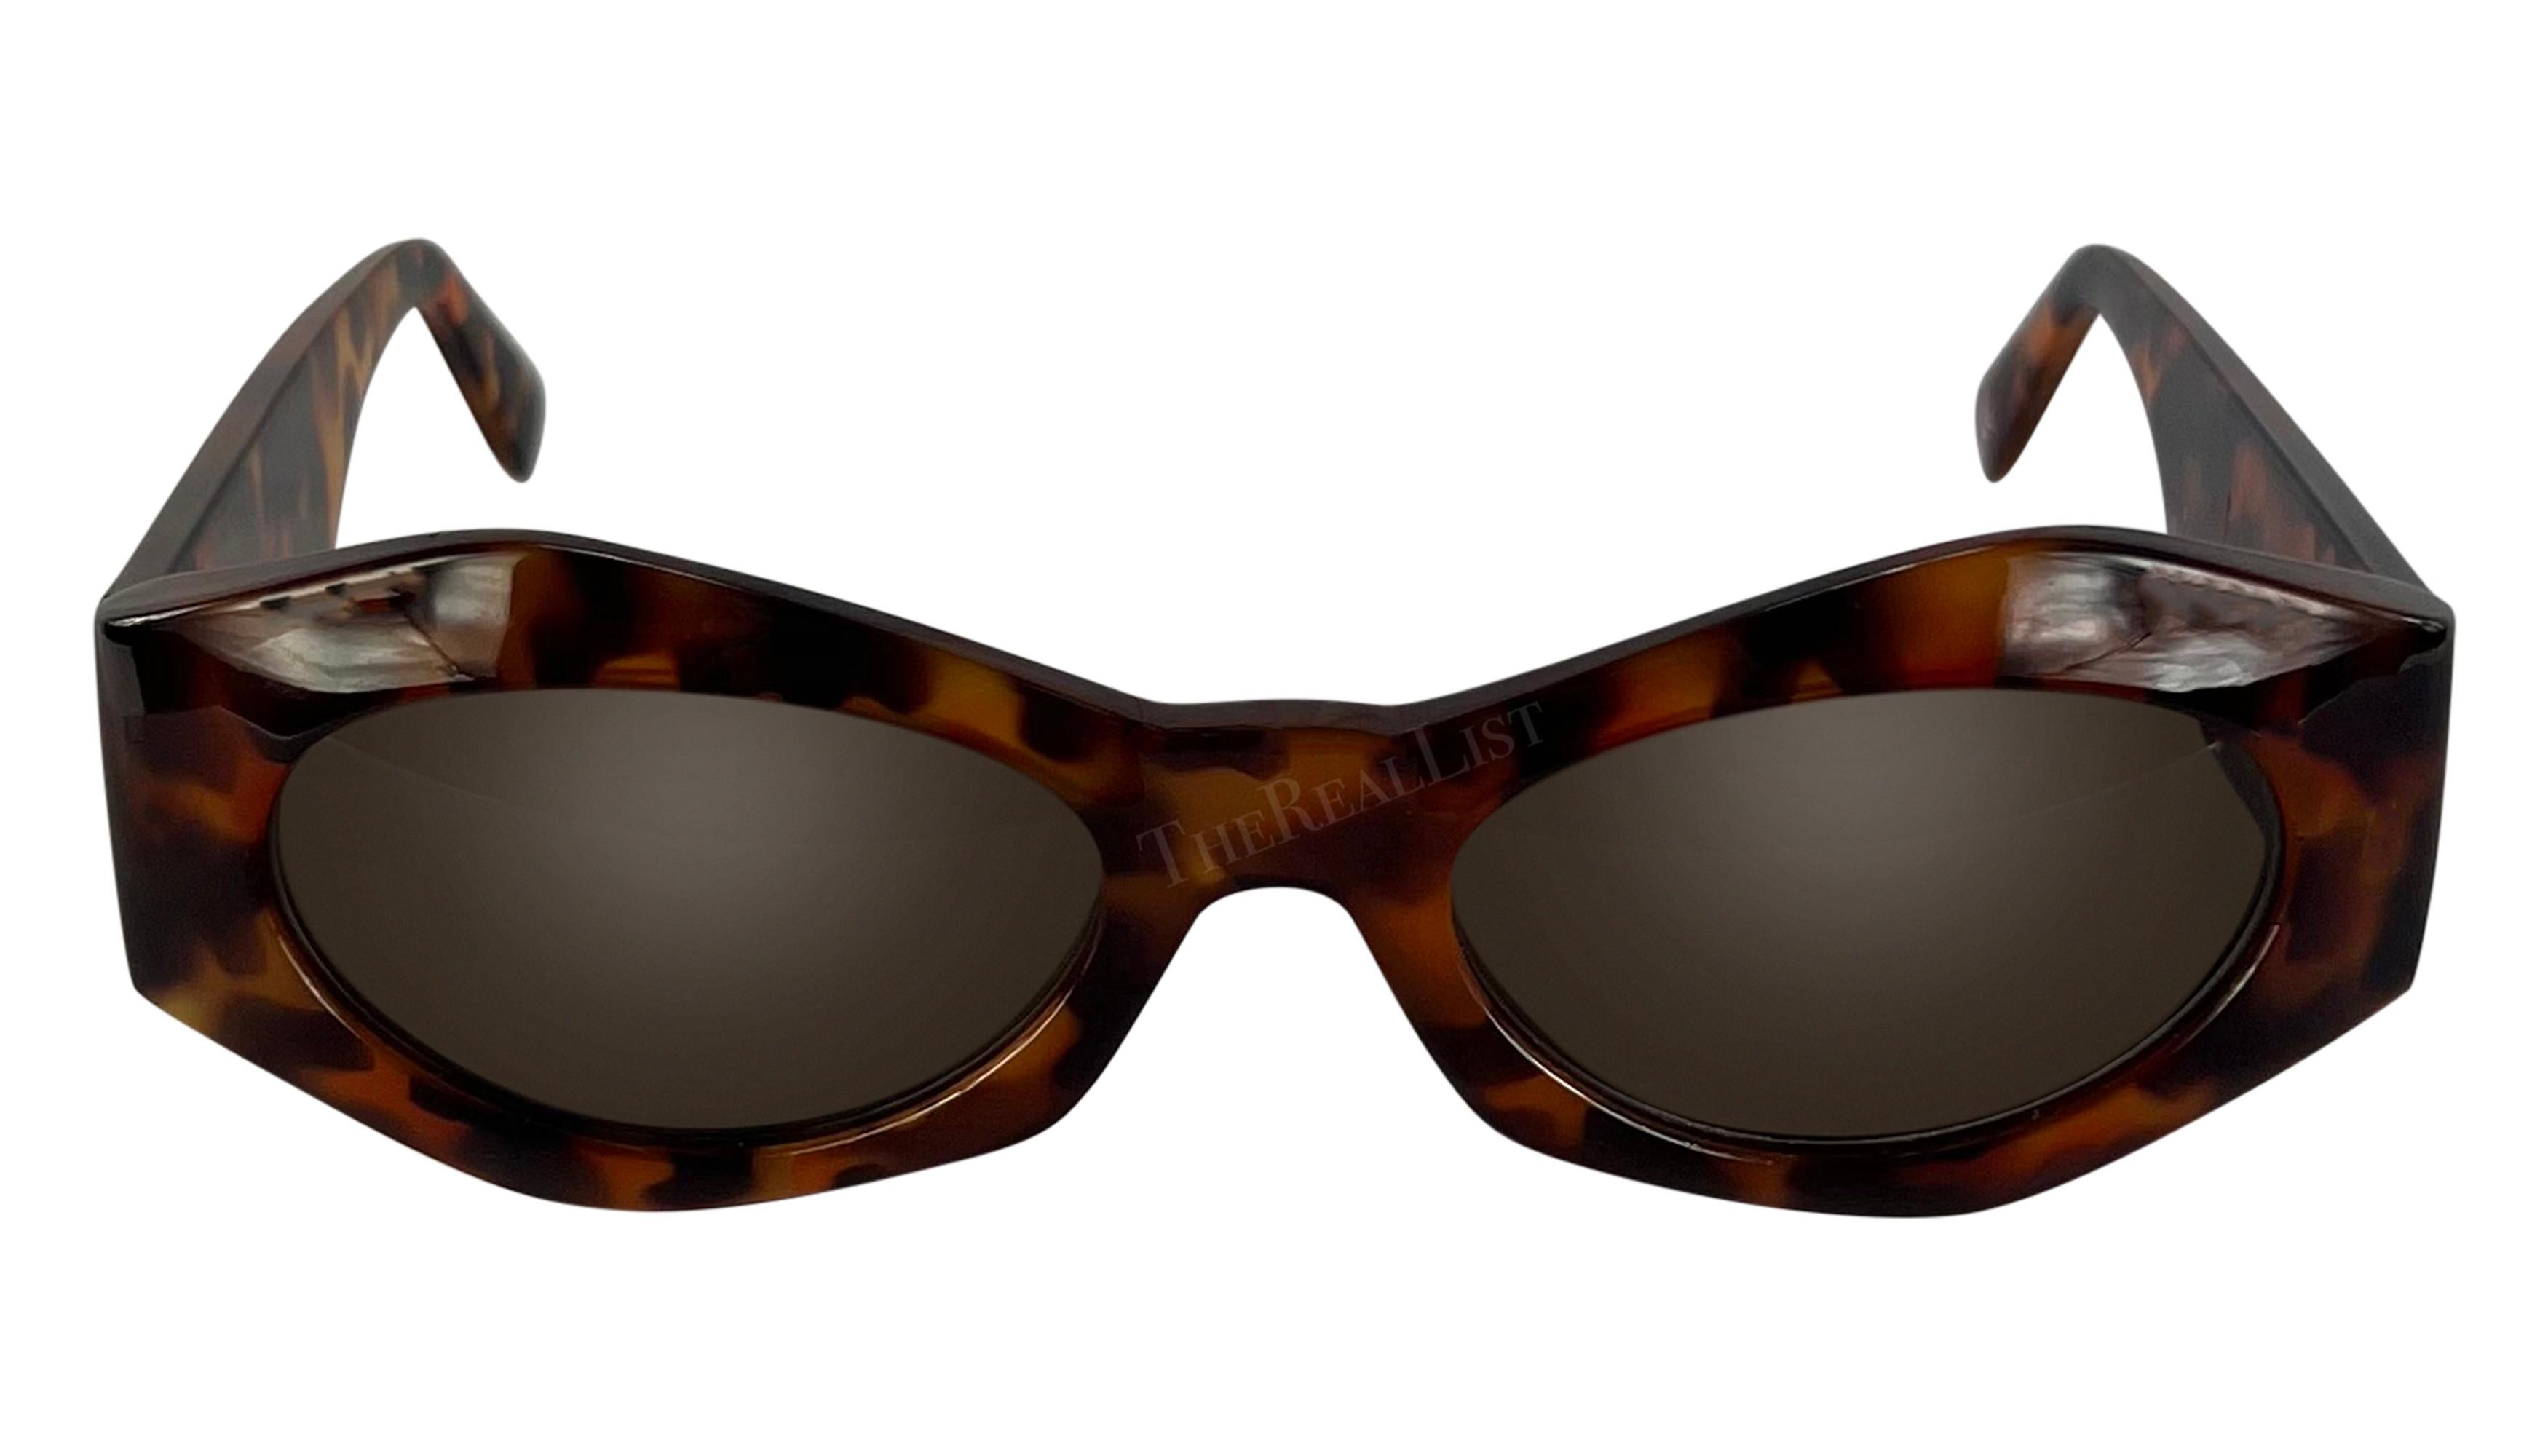 Diese kantige Sonnenbrille aus Schildpattimitat wurde in den 1990er Jahren von Gianni Versace entworfen und ist eine ultra-schicke Ergänzung für jede Garderobe. Ihre schlanke, kantige Form wird durch das ikonische goldfarbene Medusa-Relief von